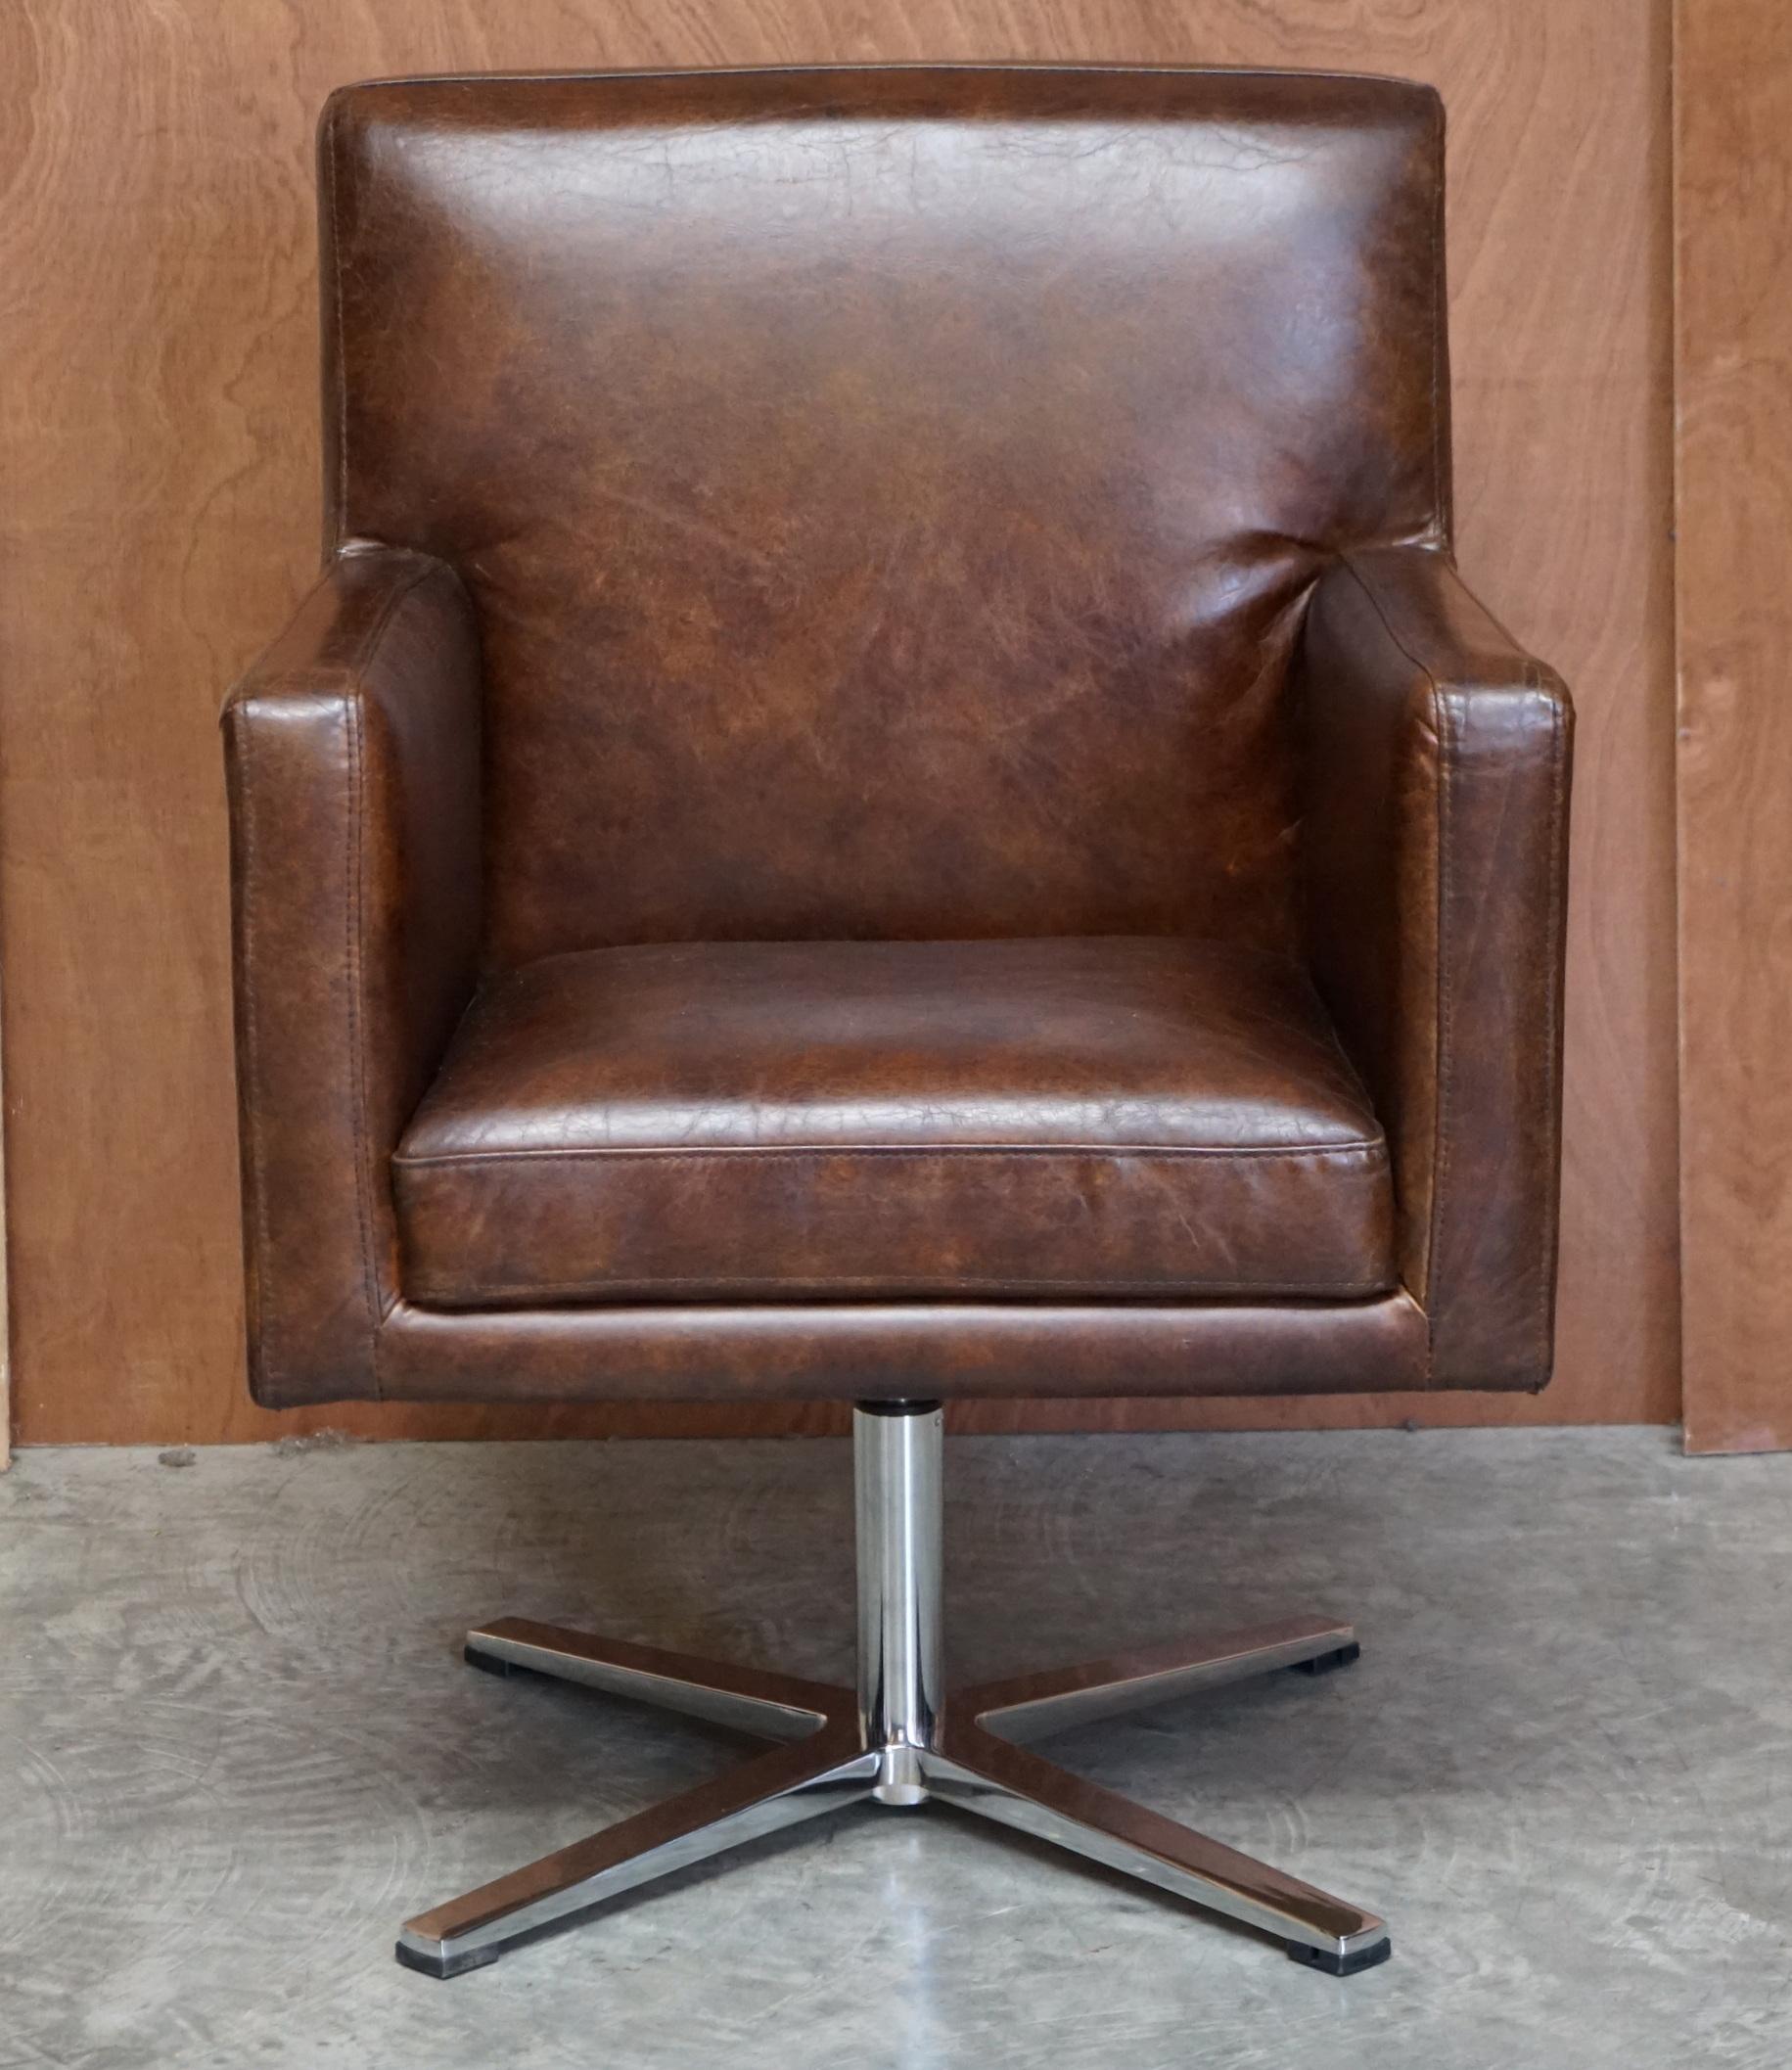 Nous avons le plaisir d'offrir à la vente 1 des 3 fauteuils de bureau aviateur en cuir brun d'origine teint à la main avec des cadres rivetés en aluminium

Cette vente concerne une chaise, avec la possibilité d'en acheter jusqu'à trois

Ce sont